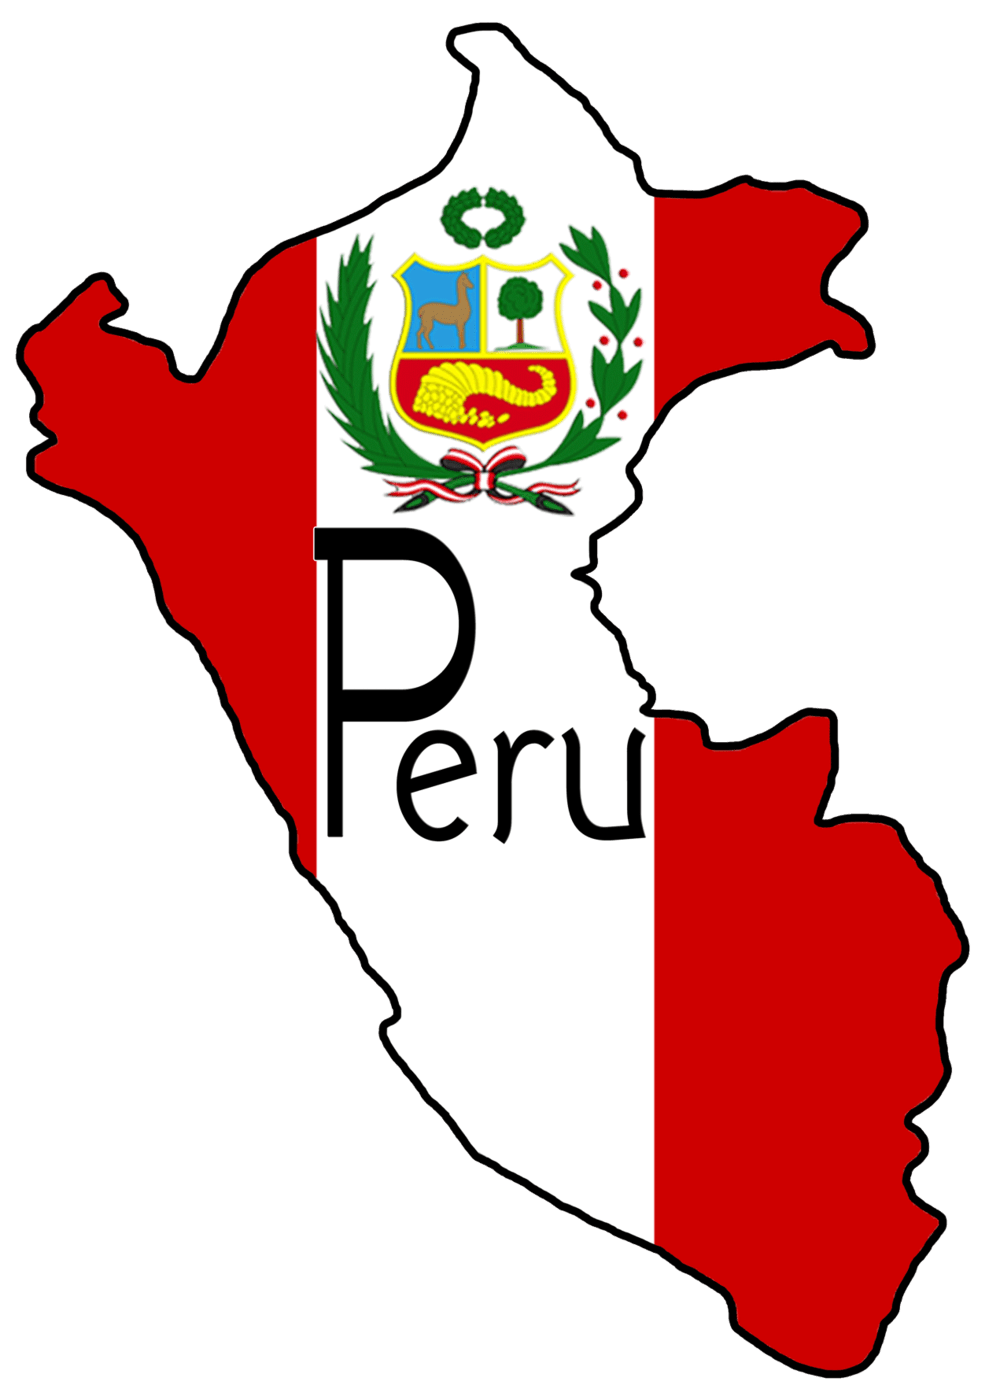 Peru Logo - Oak Ridge Baptist Church > Peru